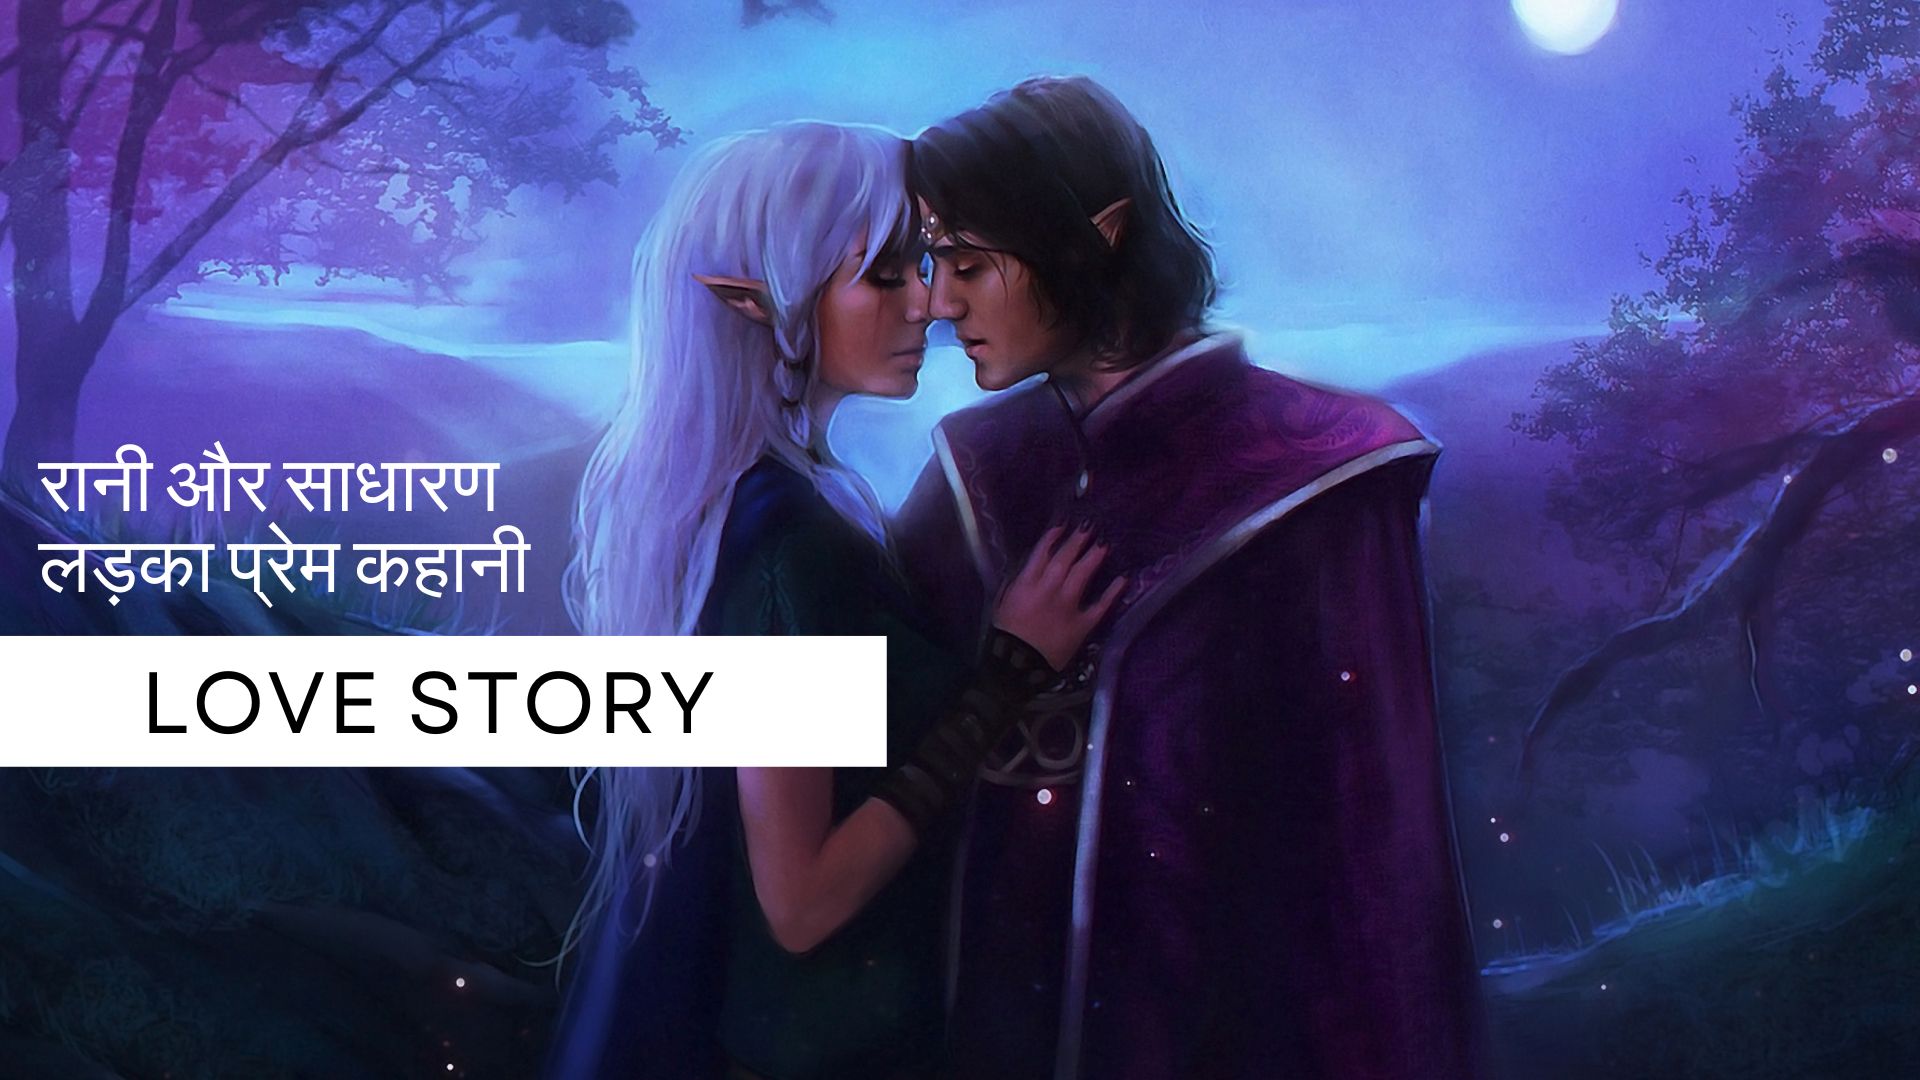 रानी और साधारण लड़का प्रेम कहानी | Love Story in Hindi